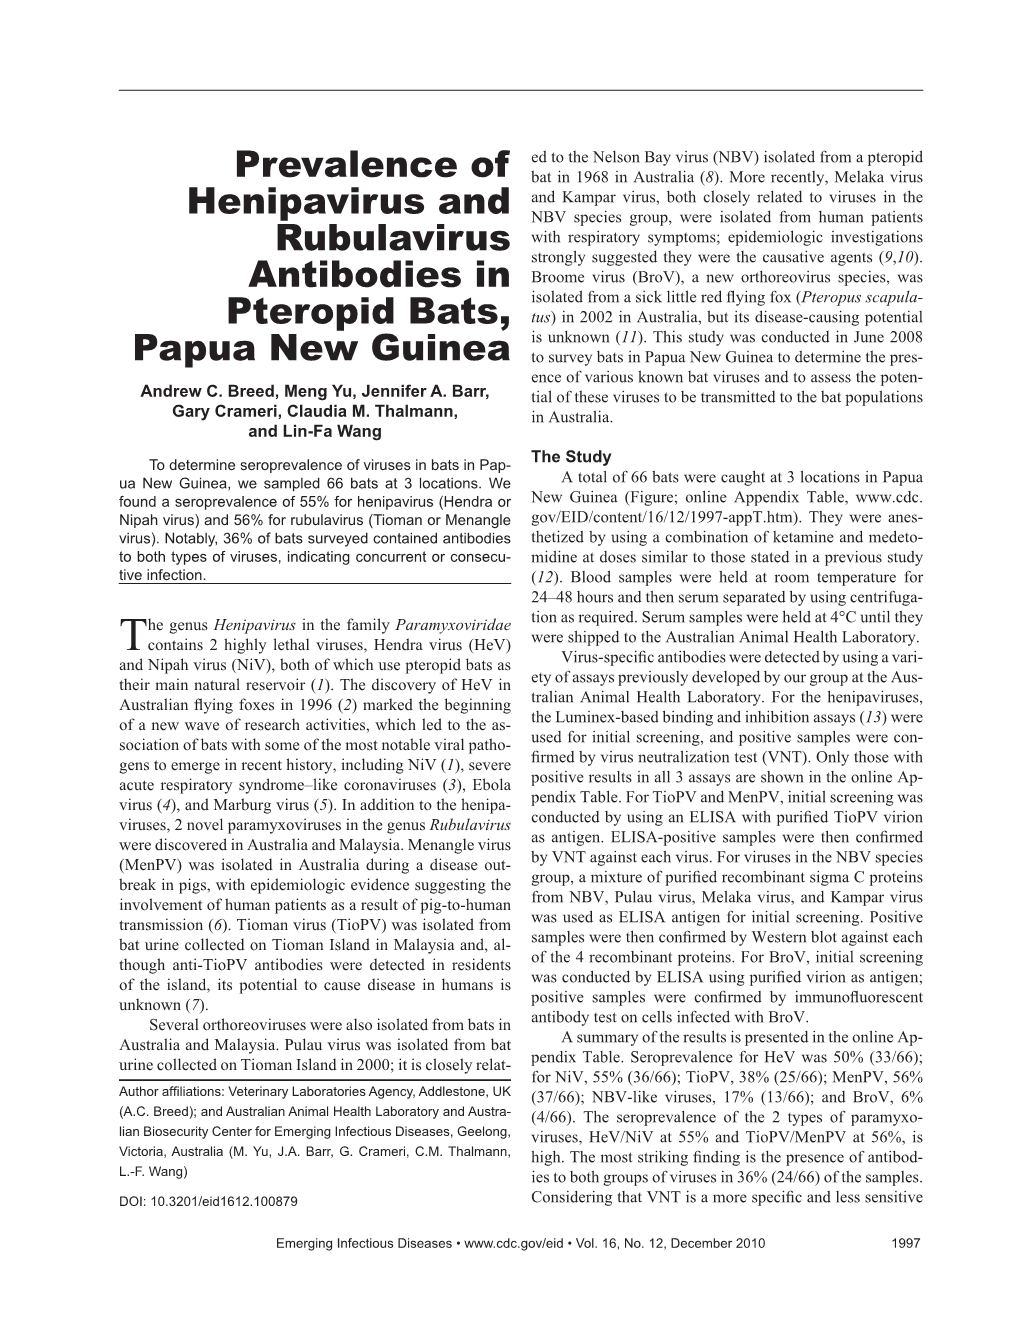 Prevalence of Henipavirus and Rubulavirus Antibodies in Pteropid